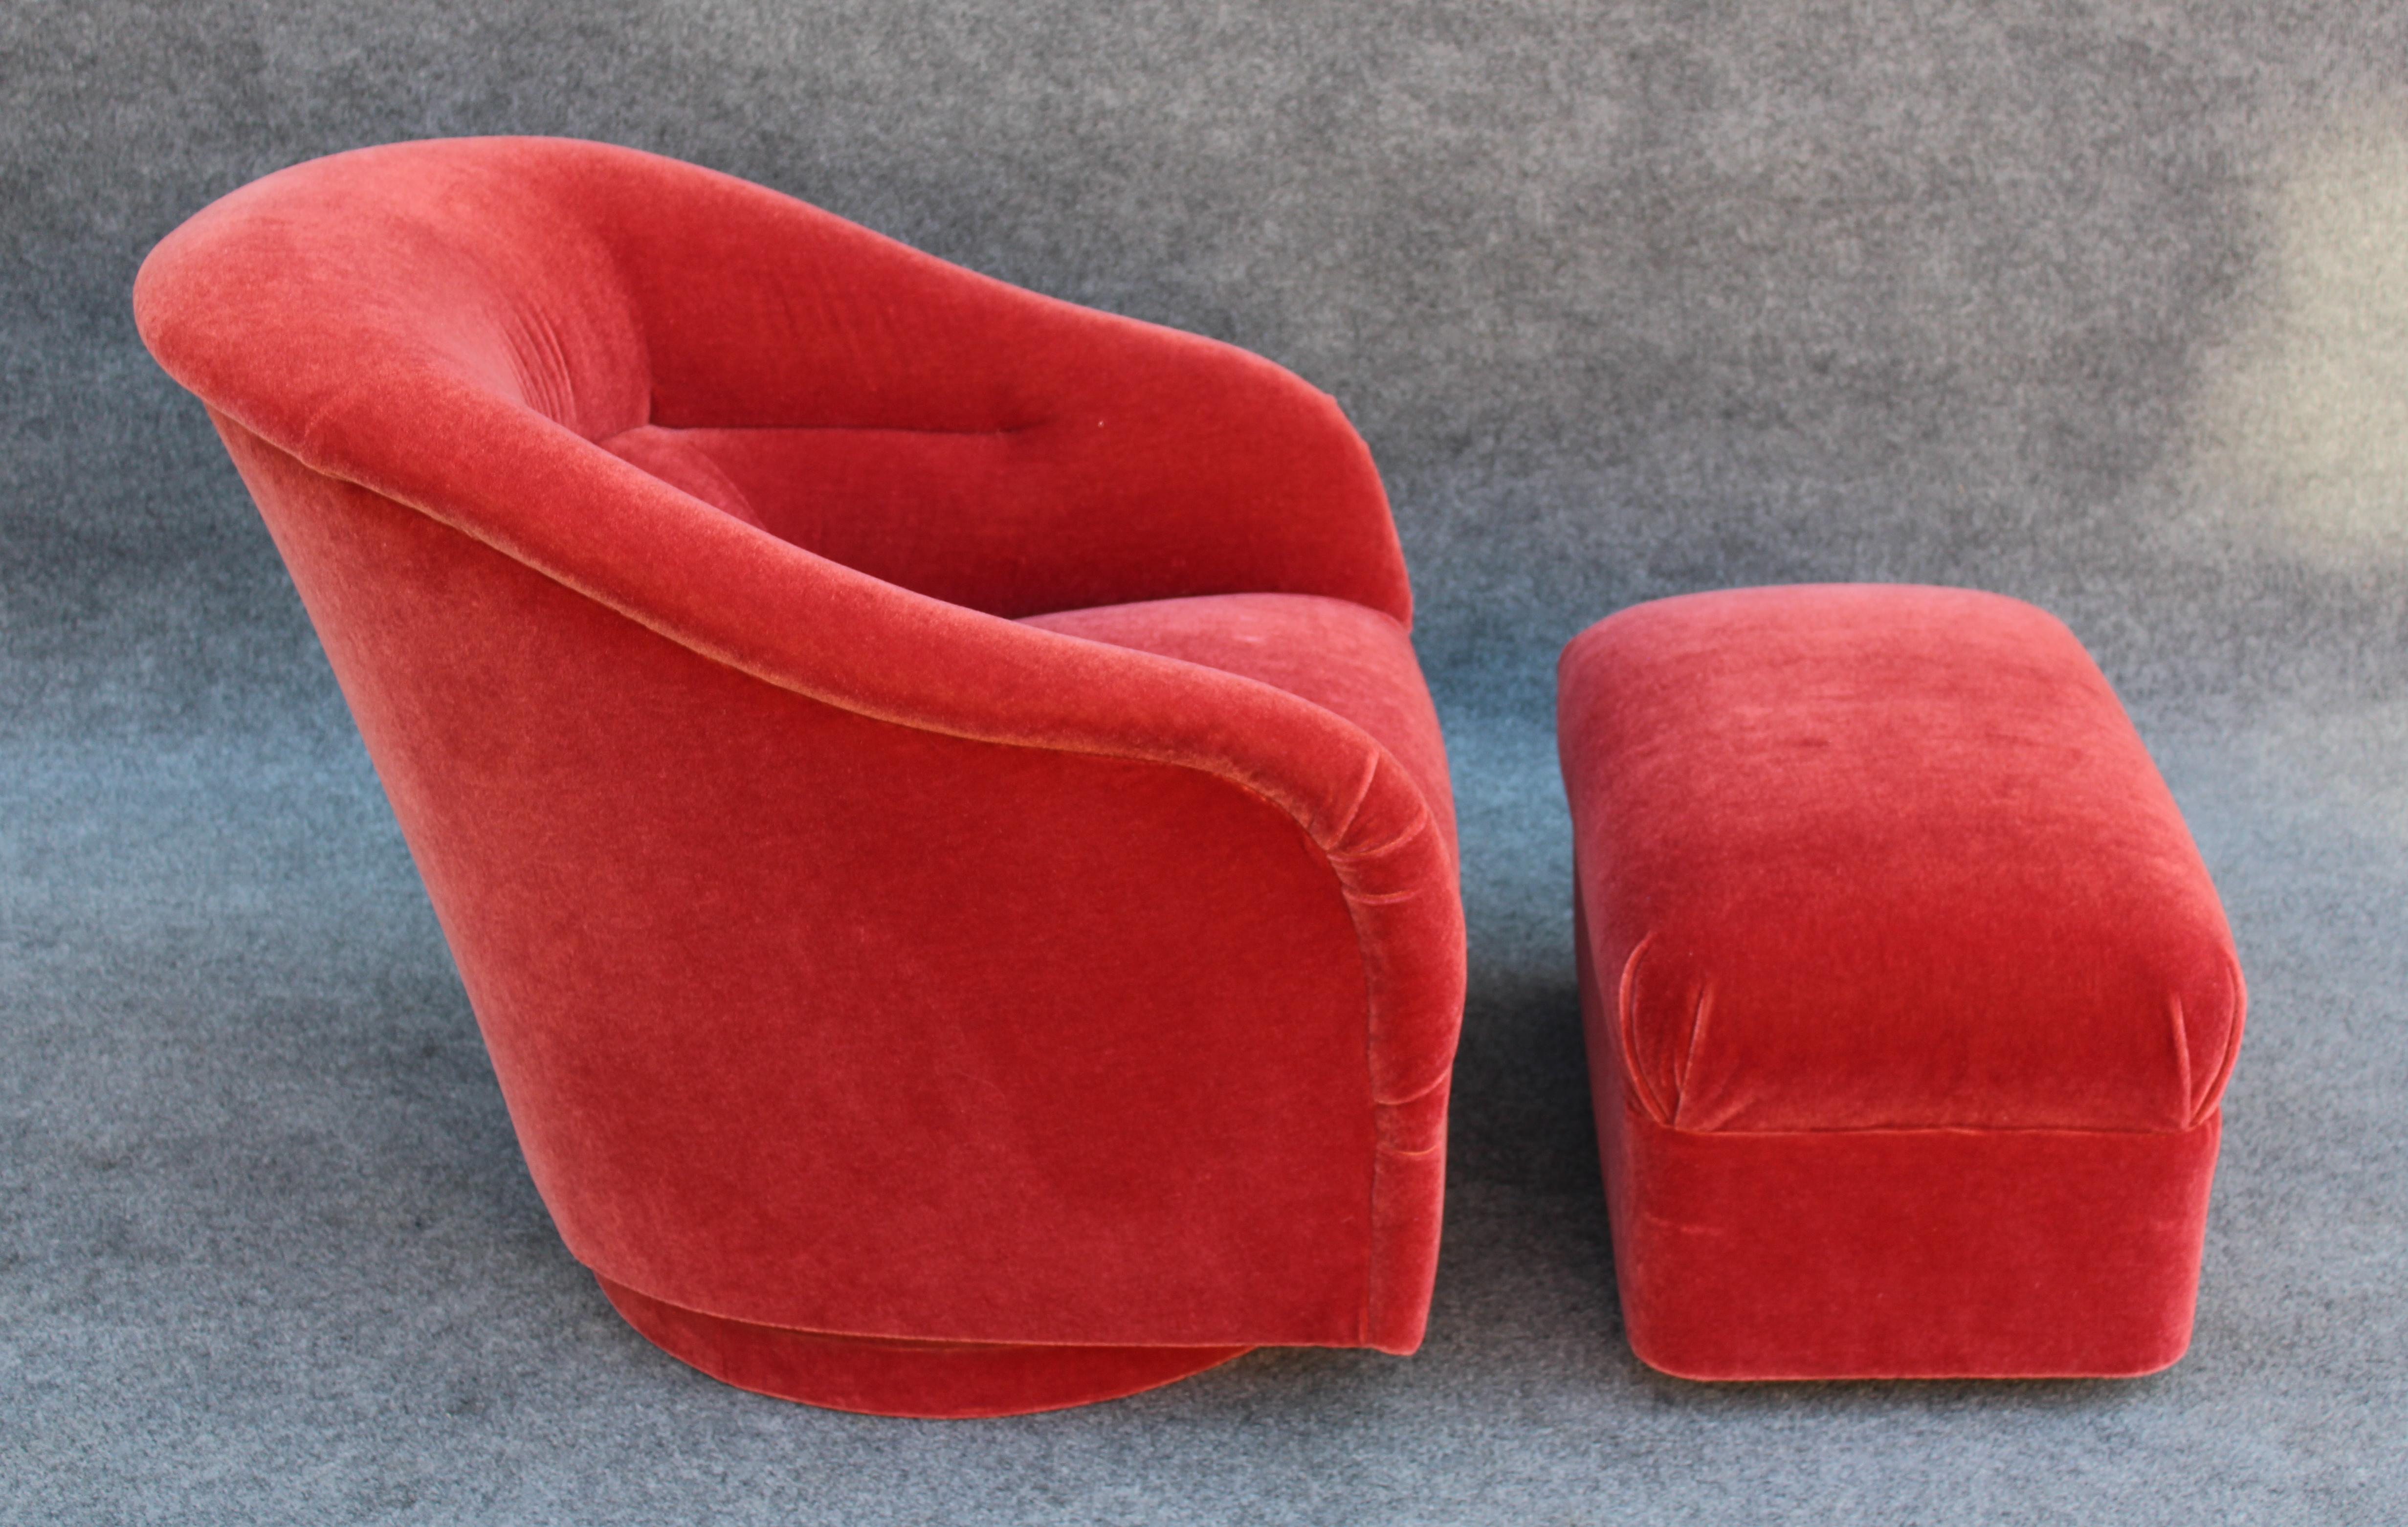 Conçue dans les années 1960 par l'icône américaine Ward Bennett, cette chaise longue et son ottoman ont été produits par Brickel. Cet exemplaire est tout à fait particulier, puisqu'il est doté d'un ottoman que l'on voit rarement. Alors que beaucoup